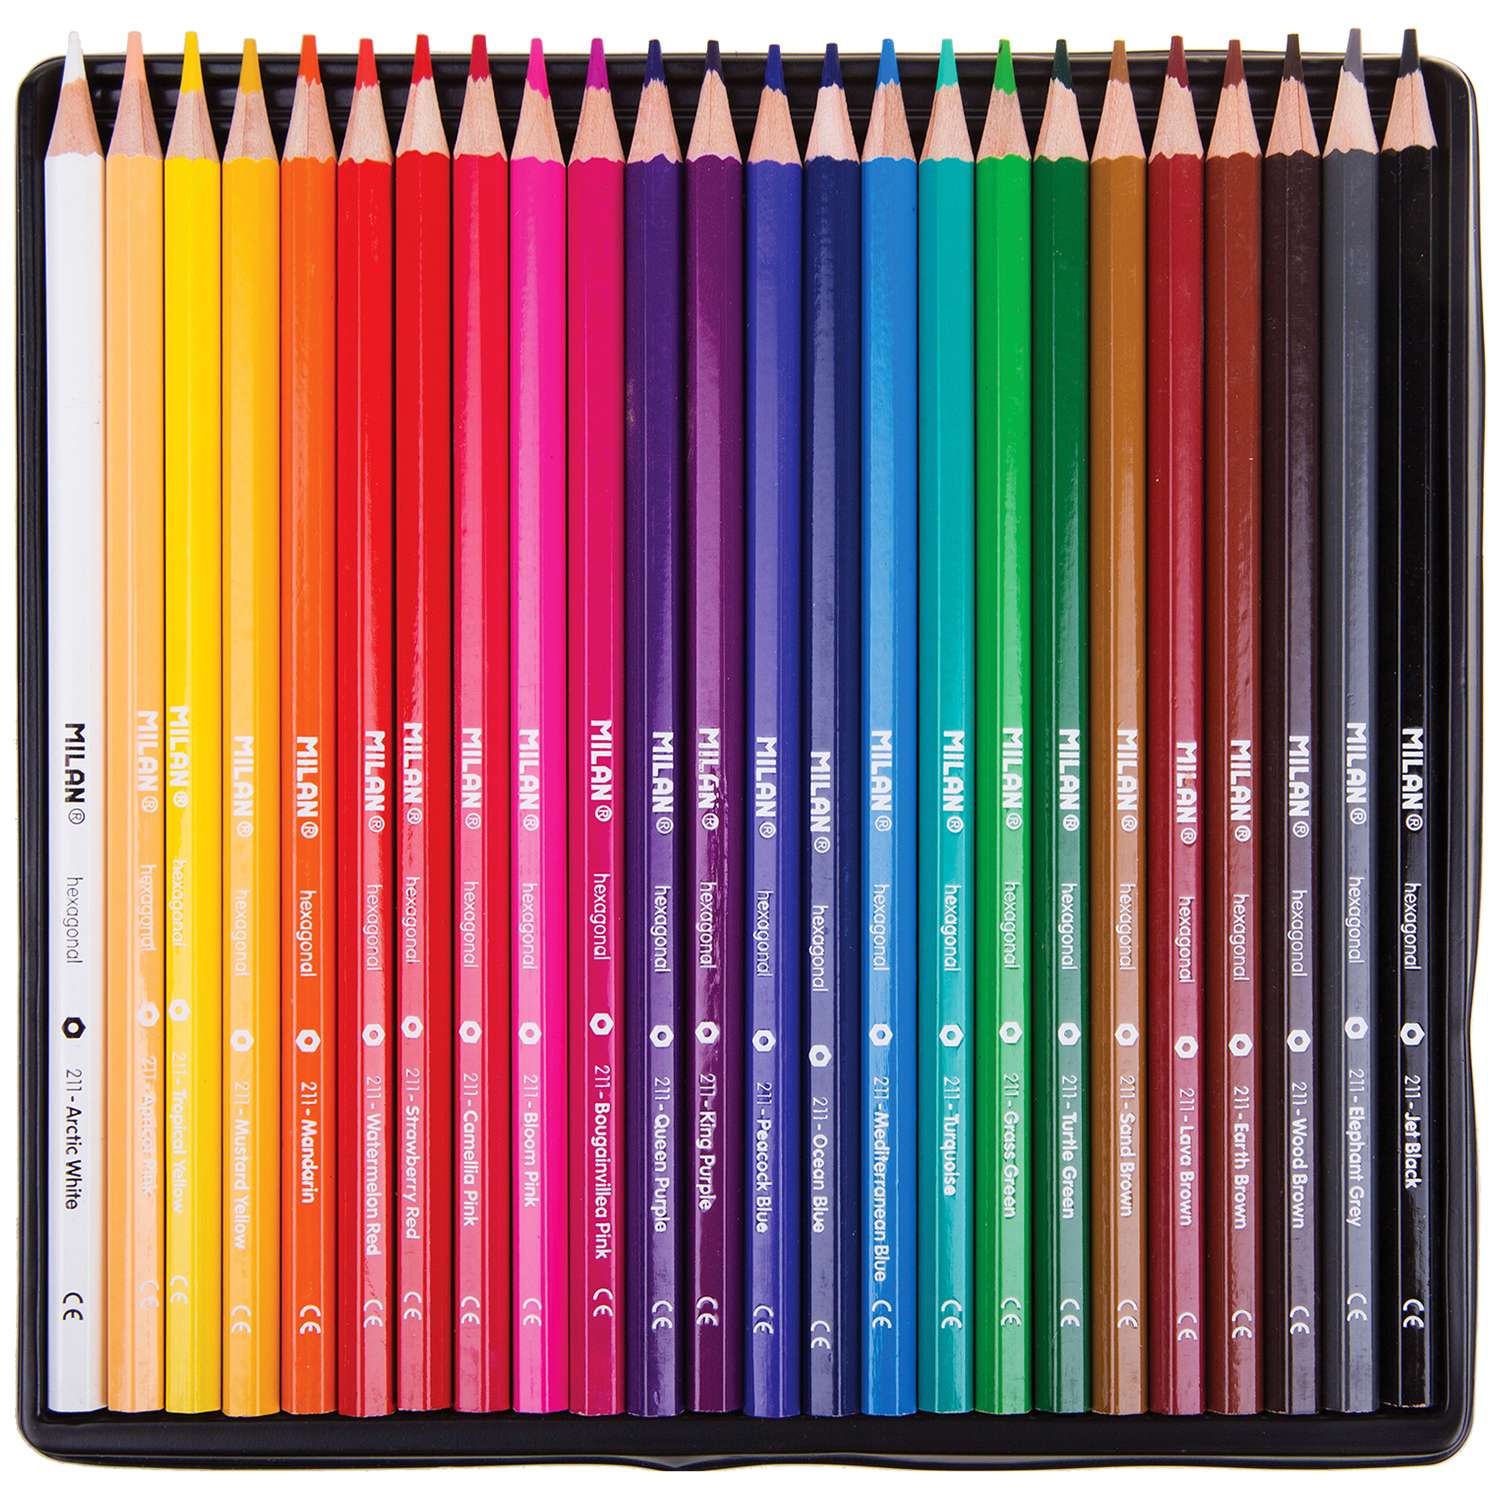 Цветные карандаши MILAN 211 24 цвета - фото 2